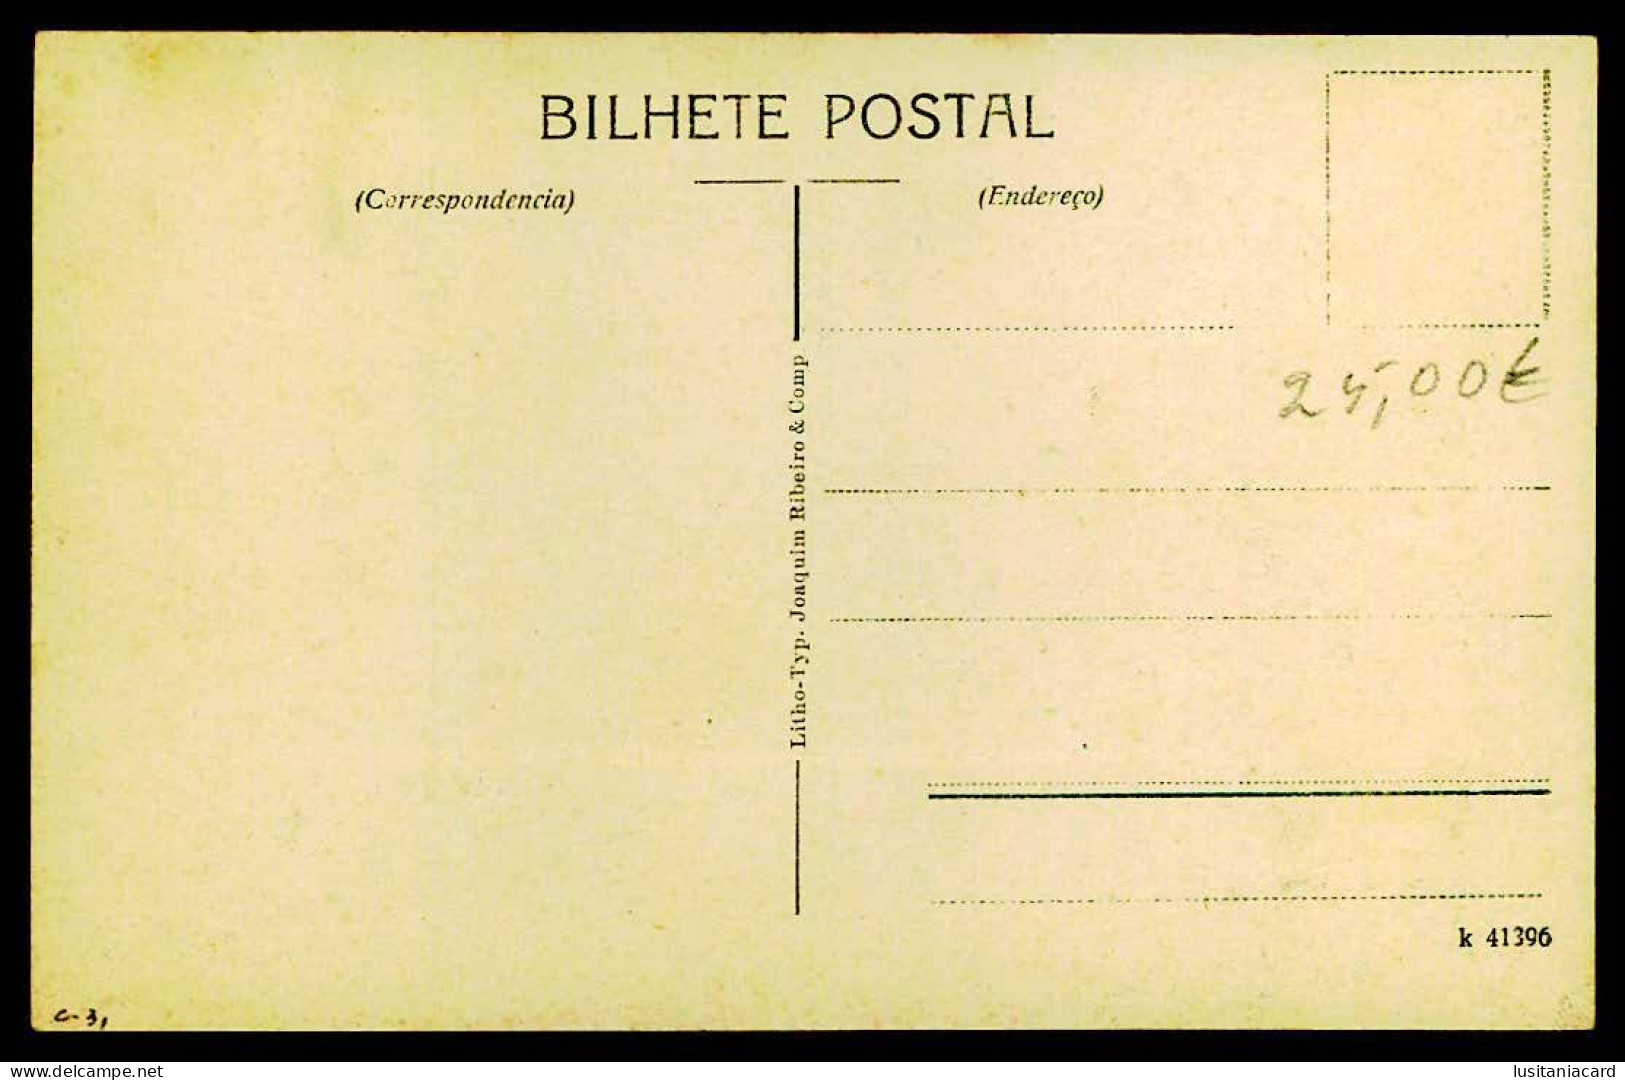 BAHIA - SÃO PEDRO - Avenida Sete ( Ed. Litho-Typ. Joaquim Ribeiro & Comp. K. 41396)  Carte Postale - Salvador De Bahia